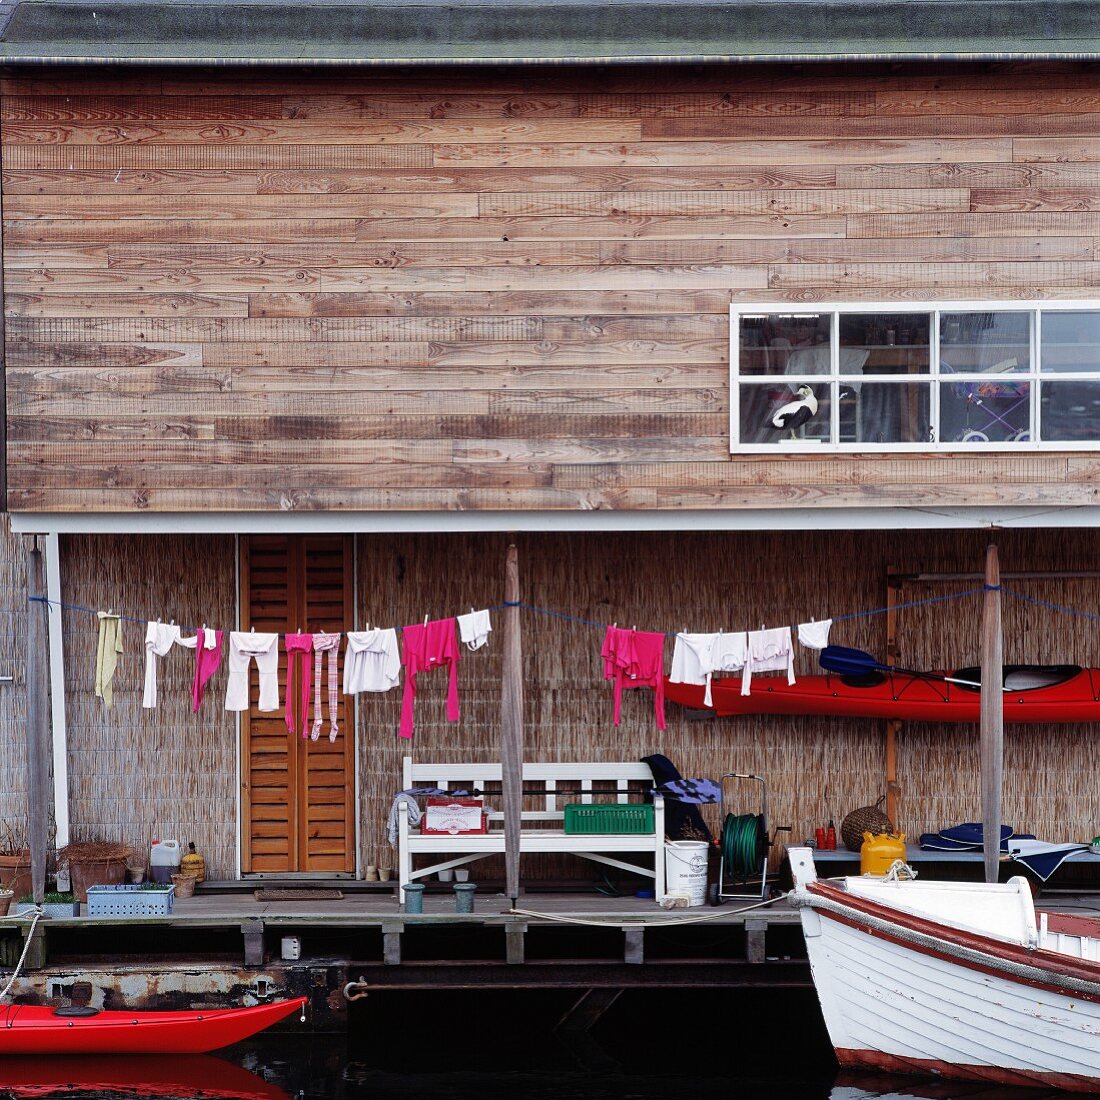 Holzhaus mit aufgehängter Wäsche am Ufer mit angelegten Booten